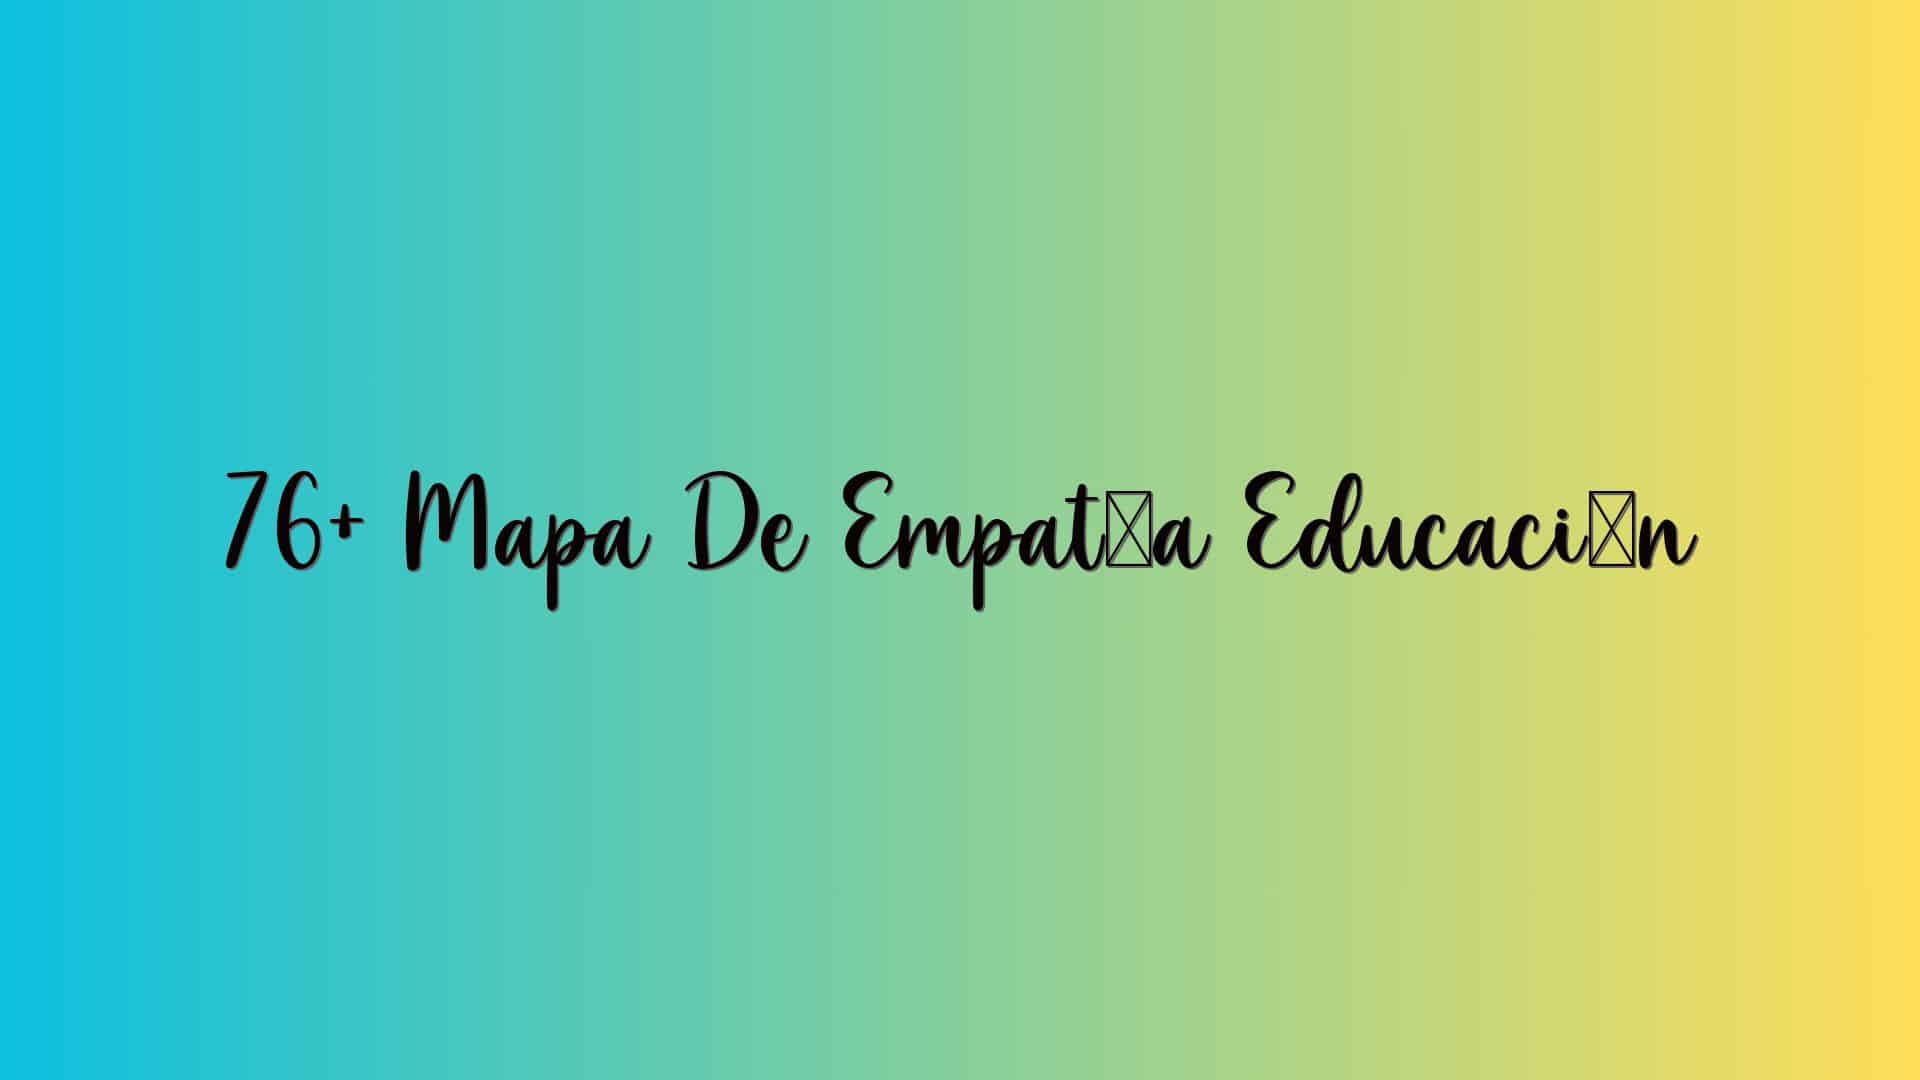 76+ Mapa De Empatía Educación